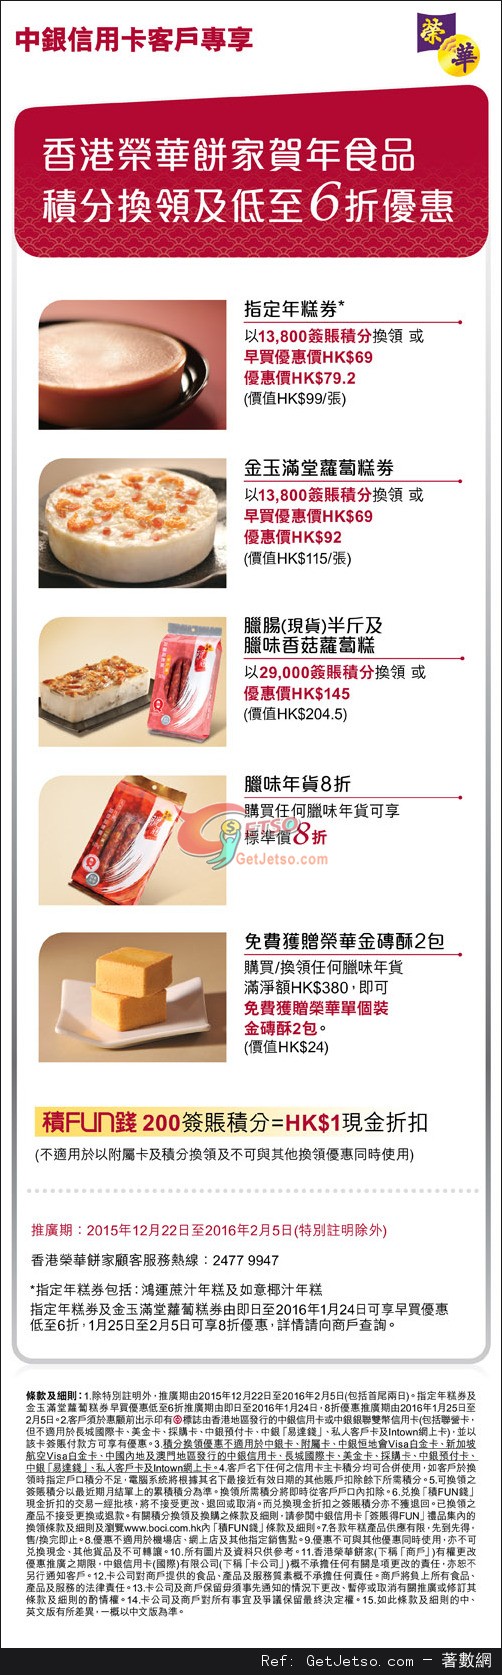 中銀信用卡享榮華餅家賀年食品低至6折優惠(至16年2月5日)圖片1